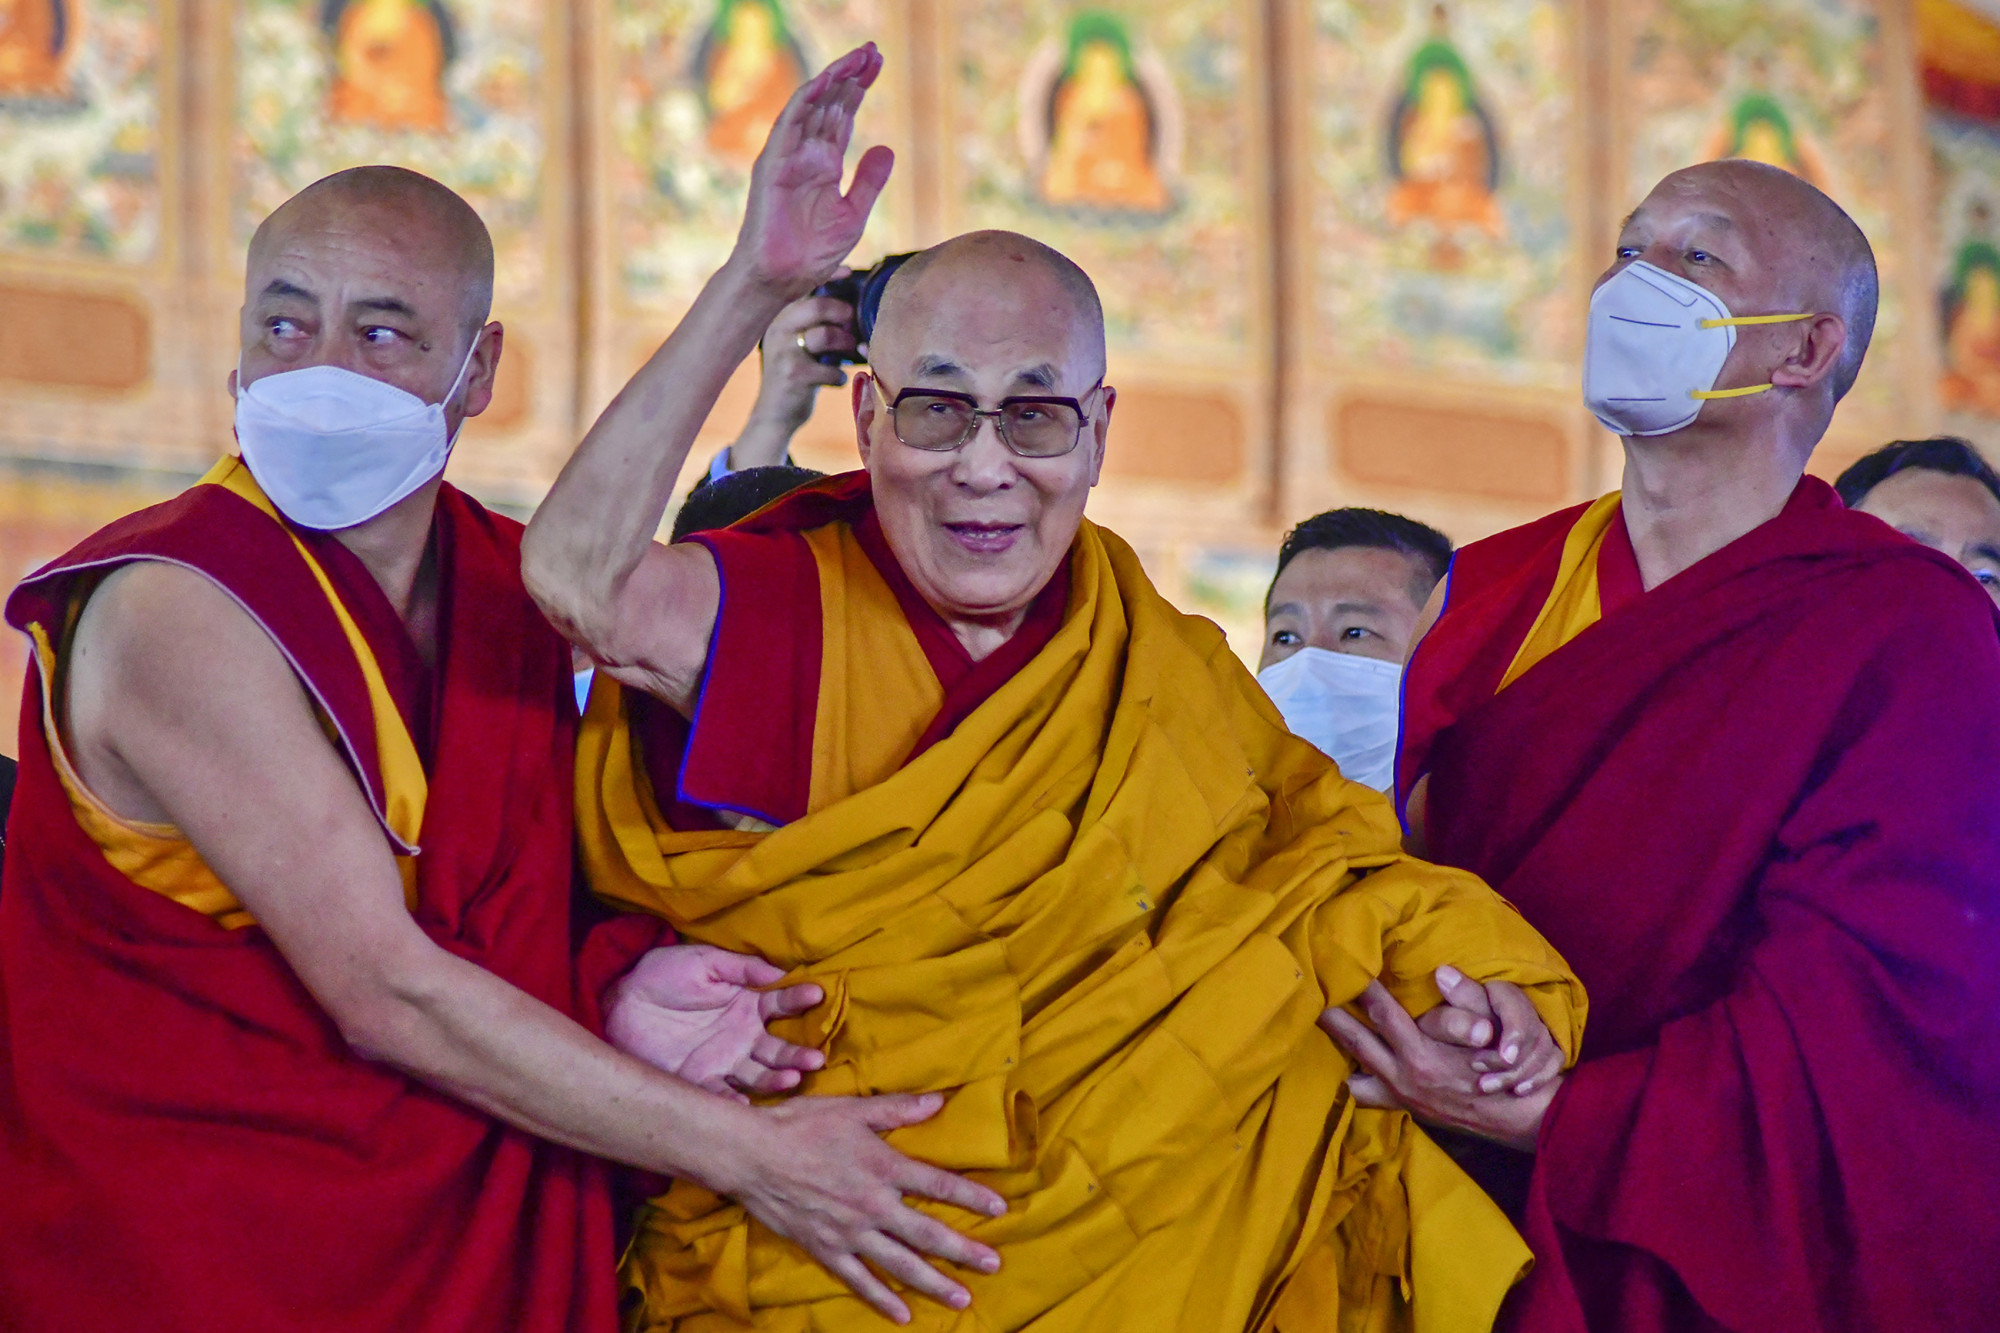 Egy tibeti vezető szerint a dalai láma spirituális gyakorlata „túlmutat az érzéki örömökön”, ezért „ártatlan” volt, amikor arra kért egy gyereket, hogy nyalja meg a nyelvét